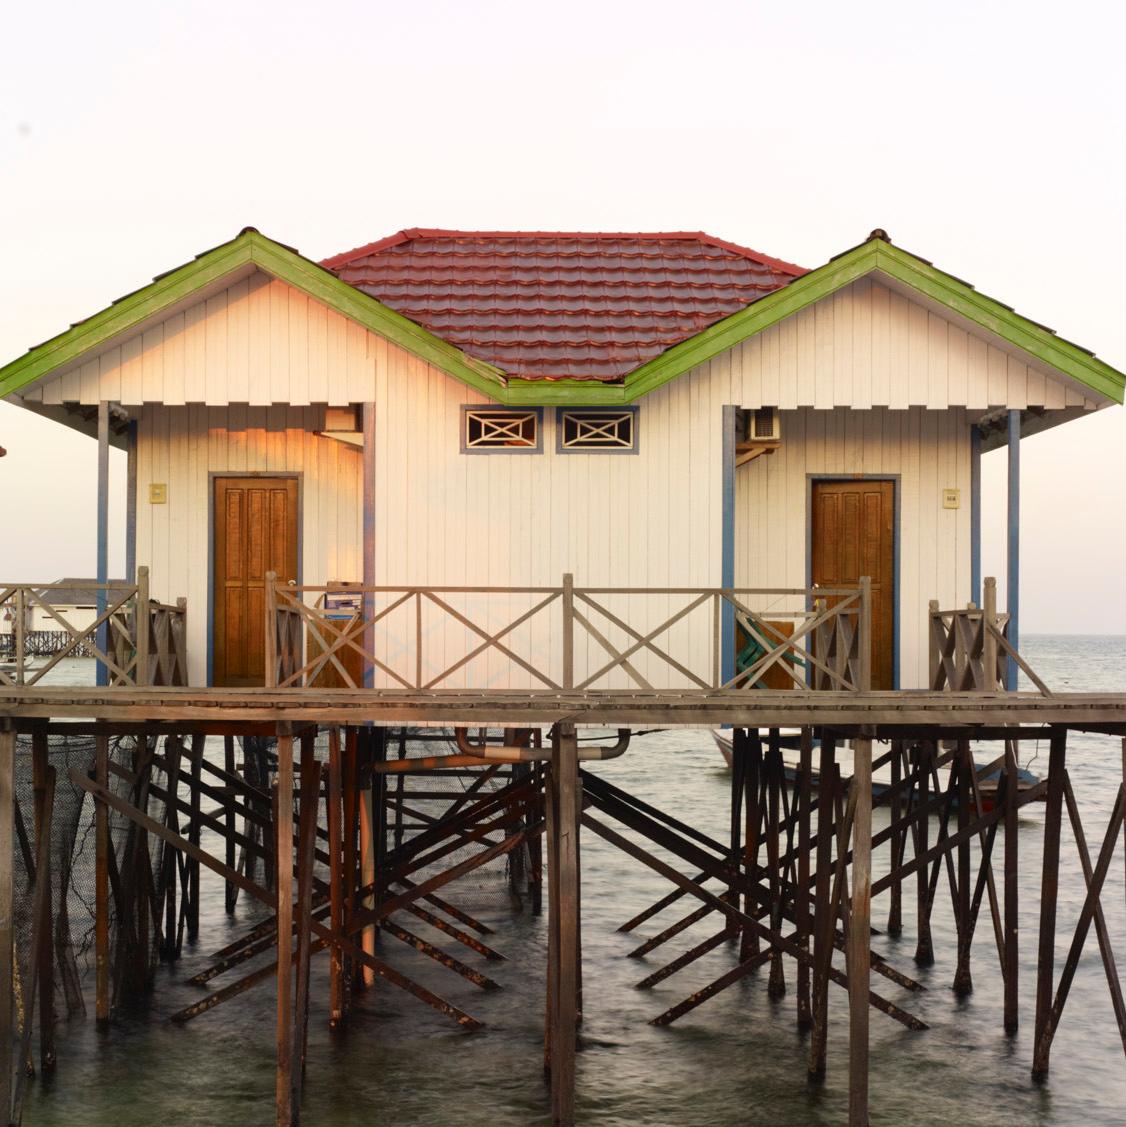 Borneo 1: stilt house architecture in water landscape at sunrise, Southeast Asia - Photograph by Vincent Dixon